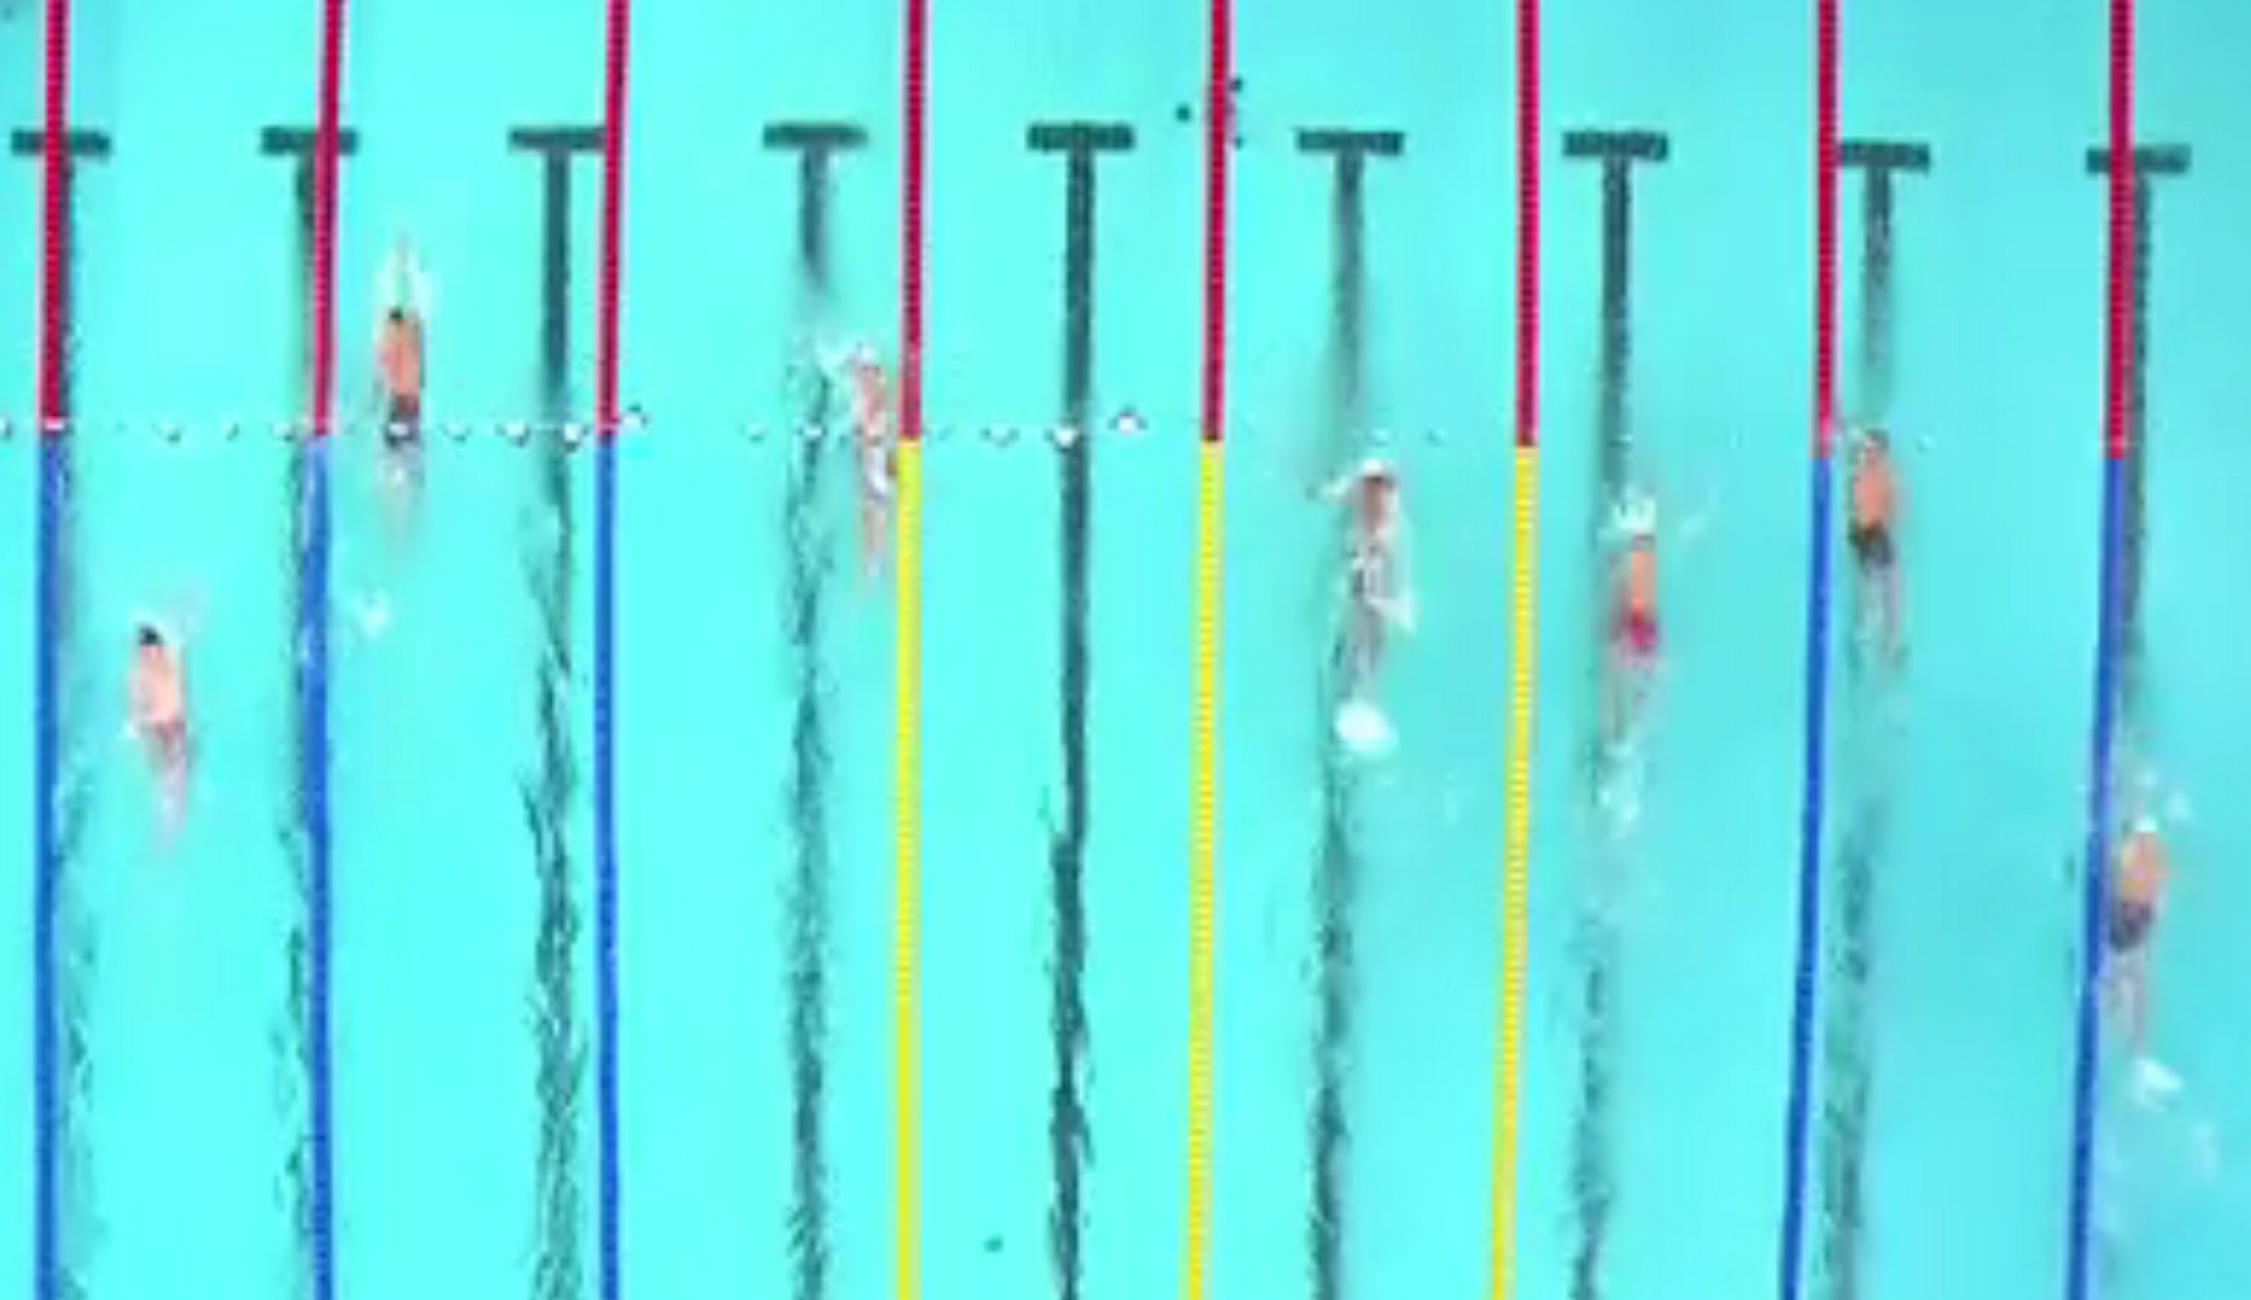 Ευρωπαϊκό πρωτάθλημα κολύμβησης: Μετά από ένσταση εκτός τελικού ο Απόστολος Σίσκος στα 200 μέτρα ύπτιο